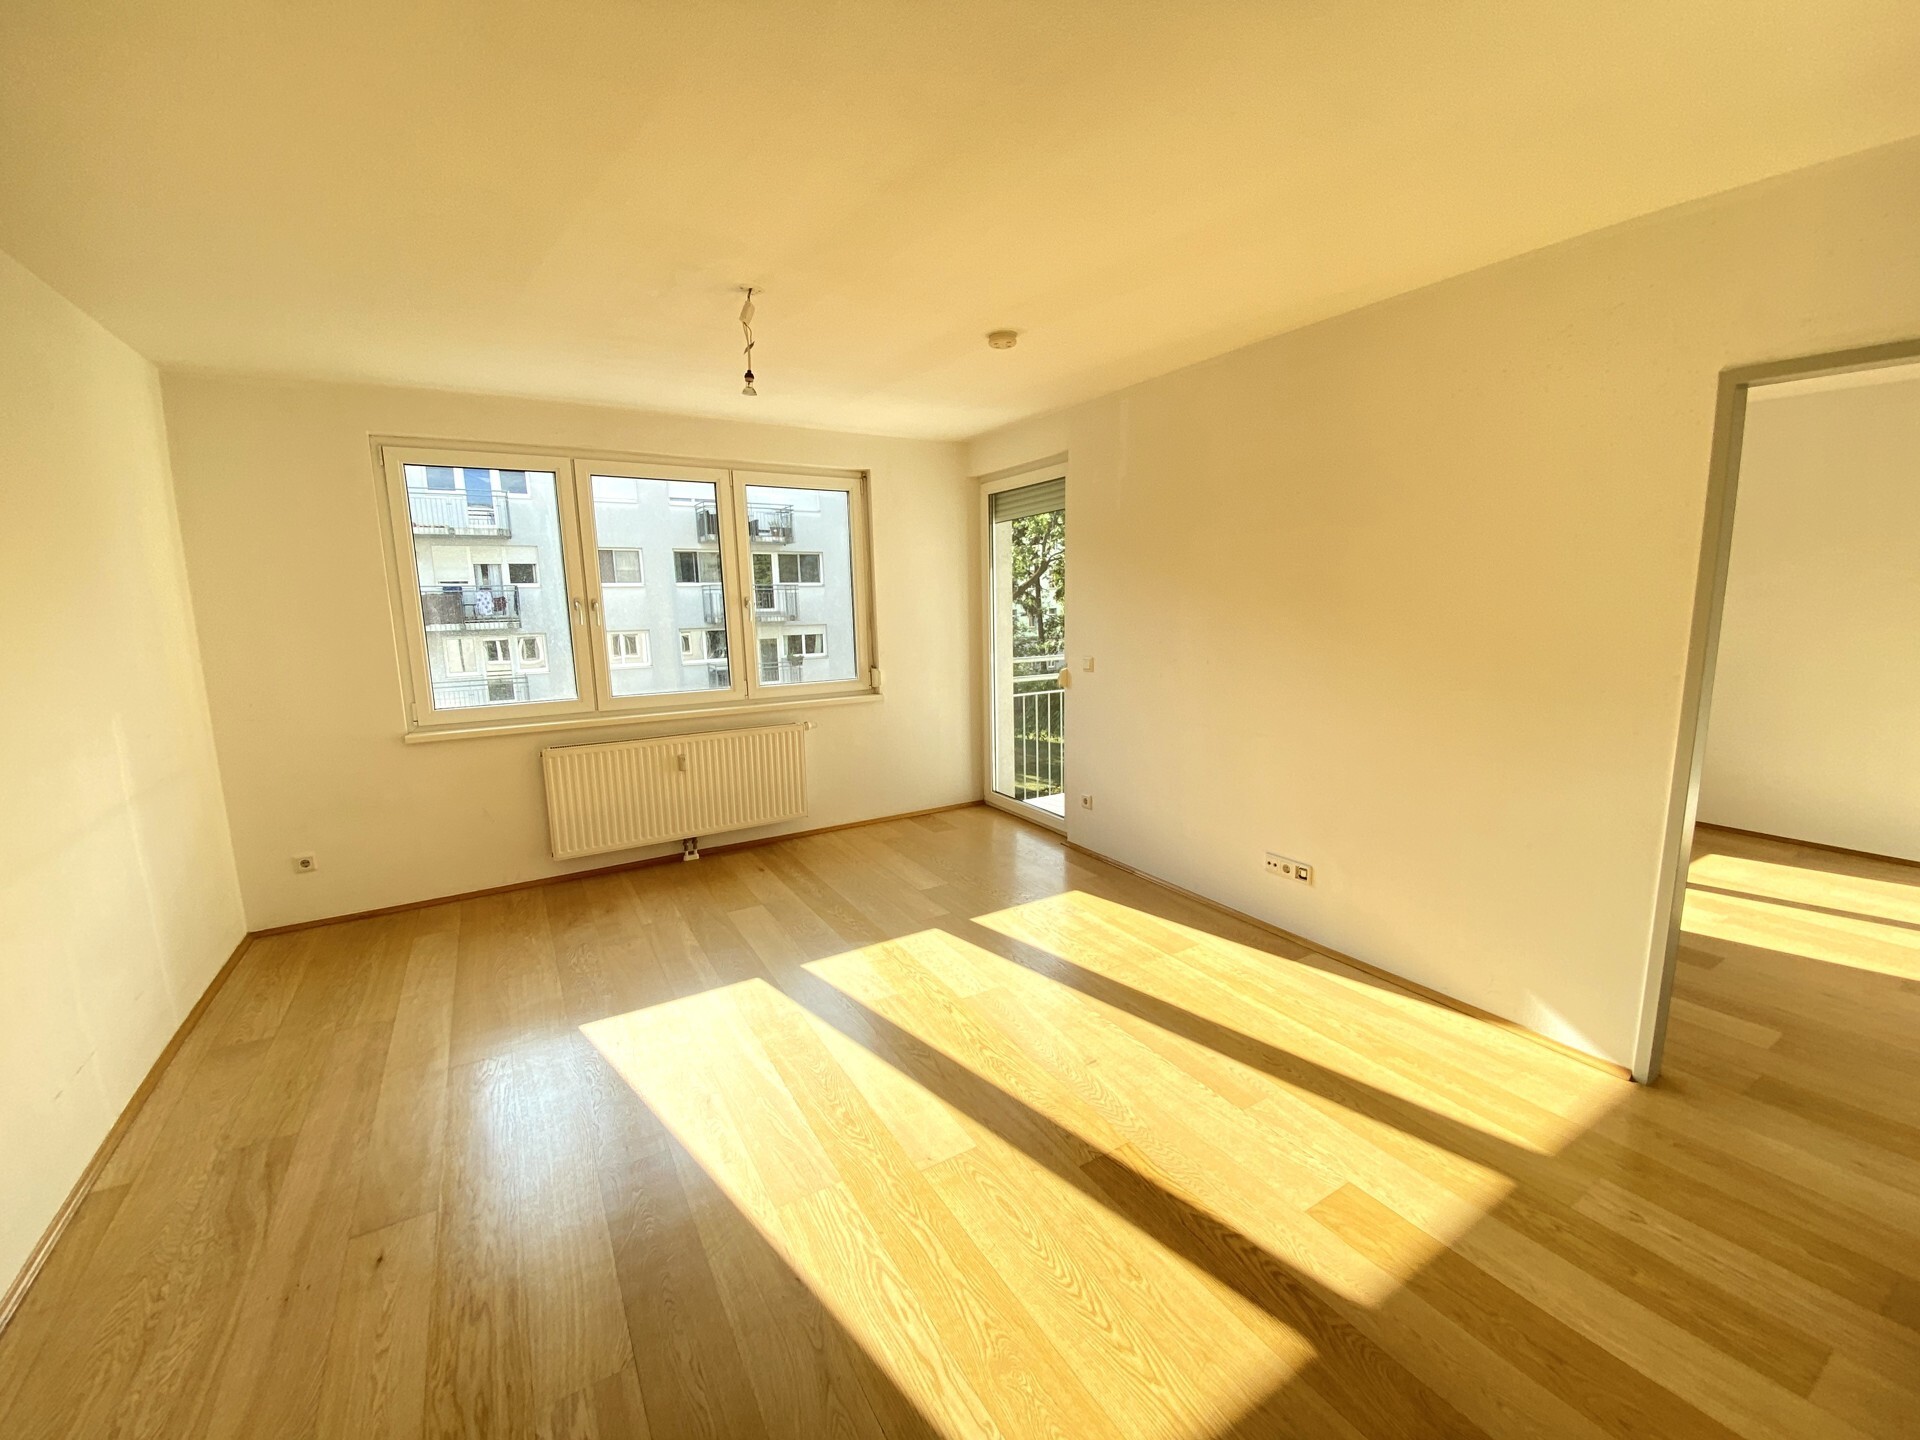 Helle 2-Zimmer Wohnung mit Balkon und Einbauküche - GARAGENPLATZ INKLUSIVE - zu kaufen in 1160 Wien